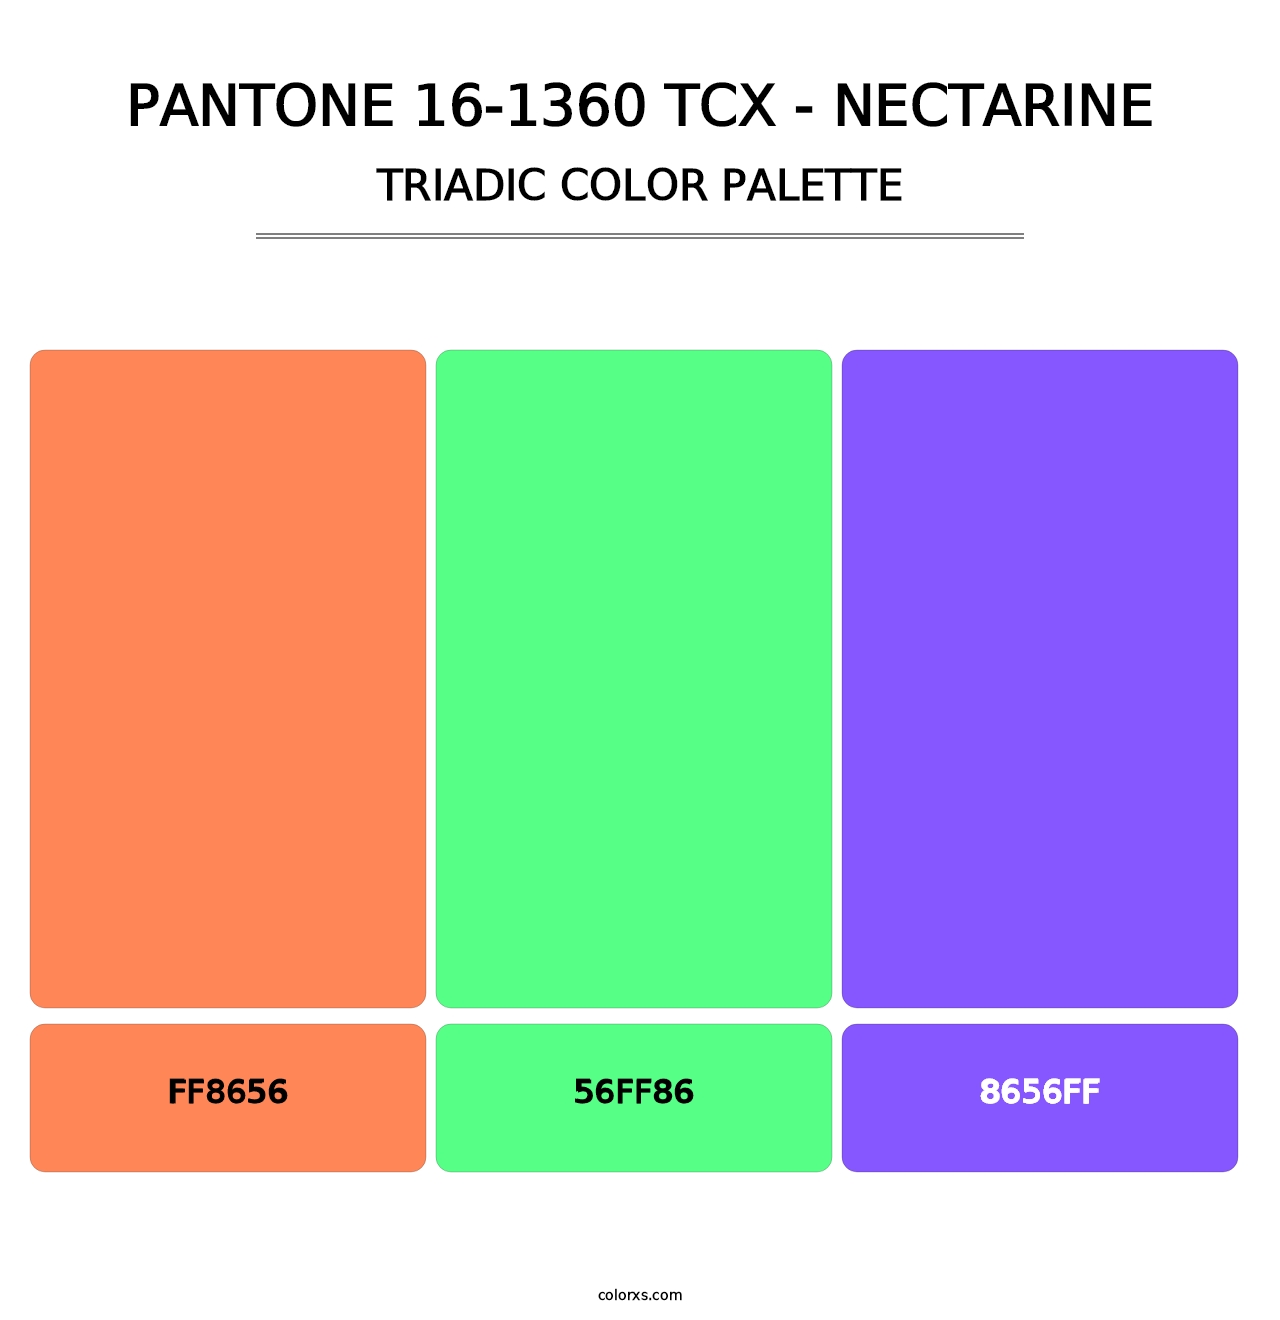 PANTONE 16-1360 TCX - Nectarine - Triadic Color Palette